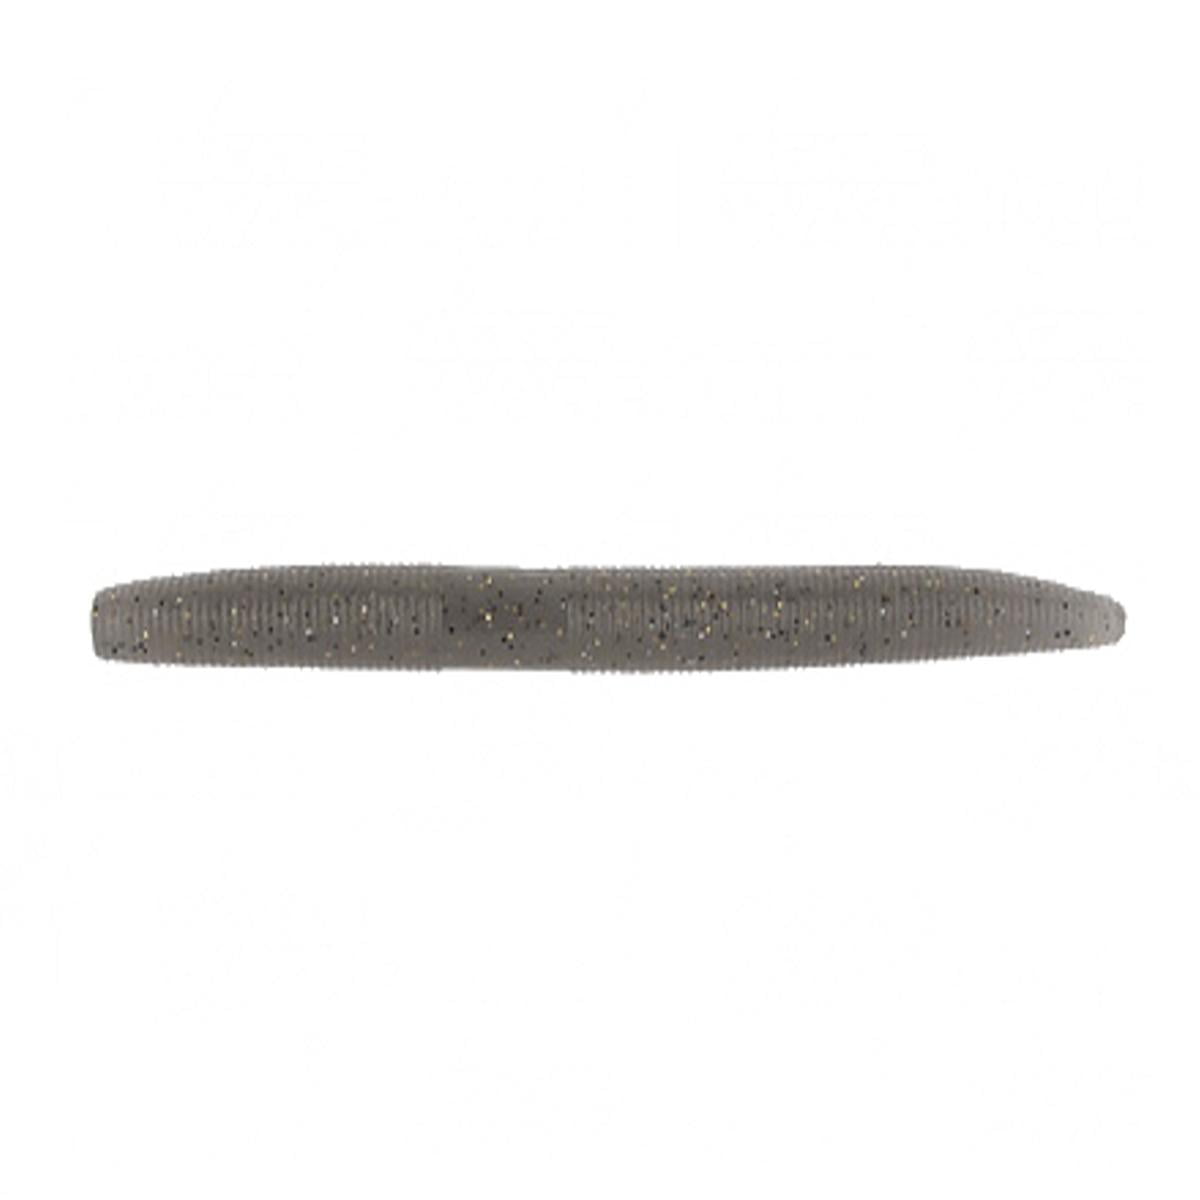 Gary Yamamoto Custom Baits 5 Senko Worm, Natural Shad - 9-10-306 